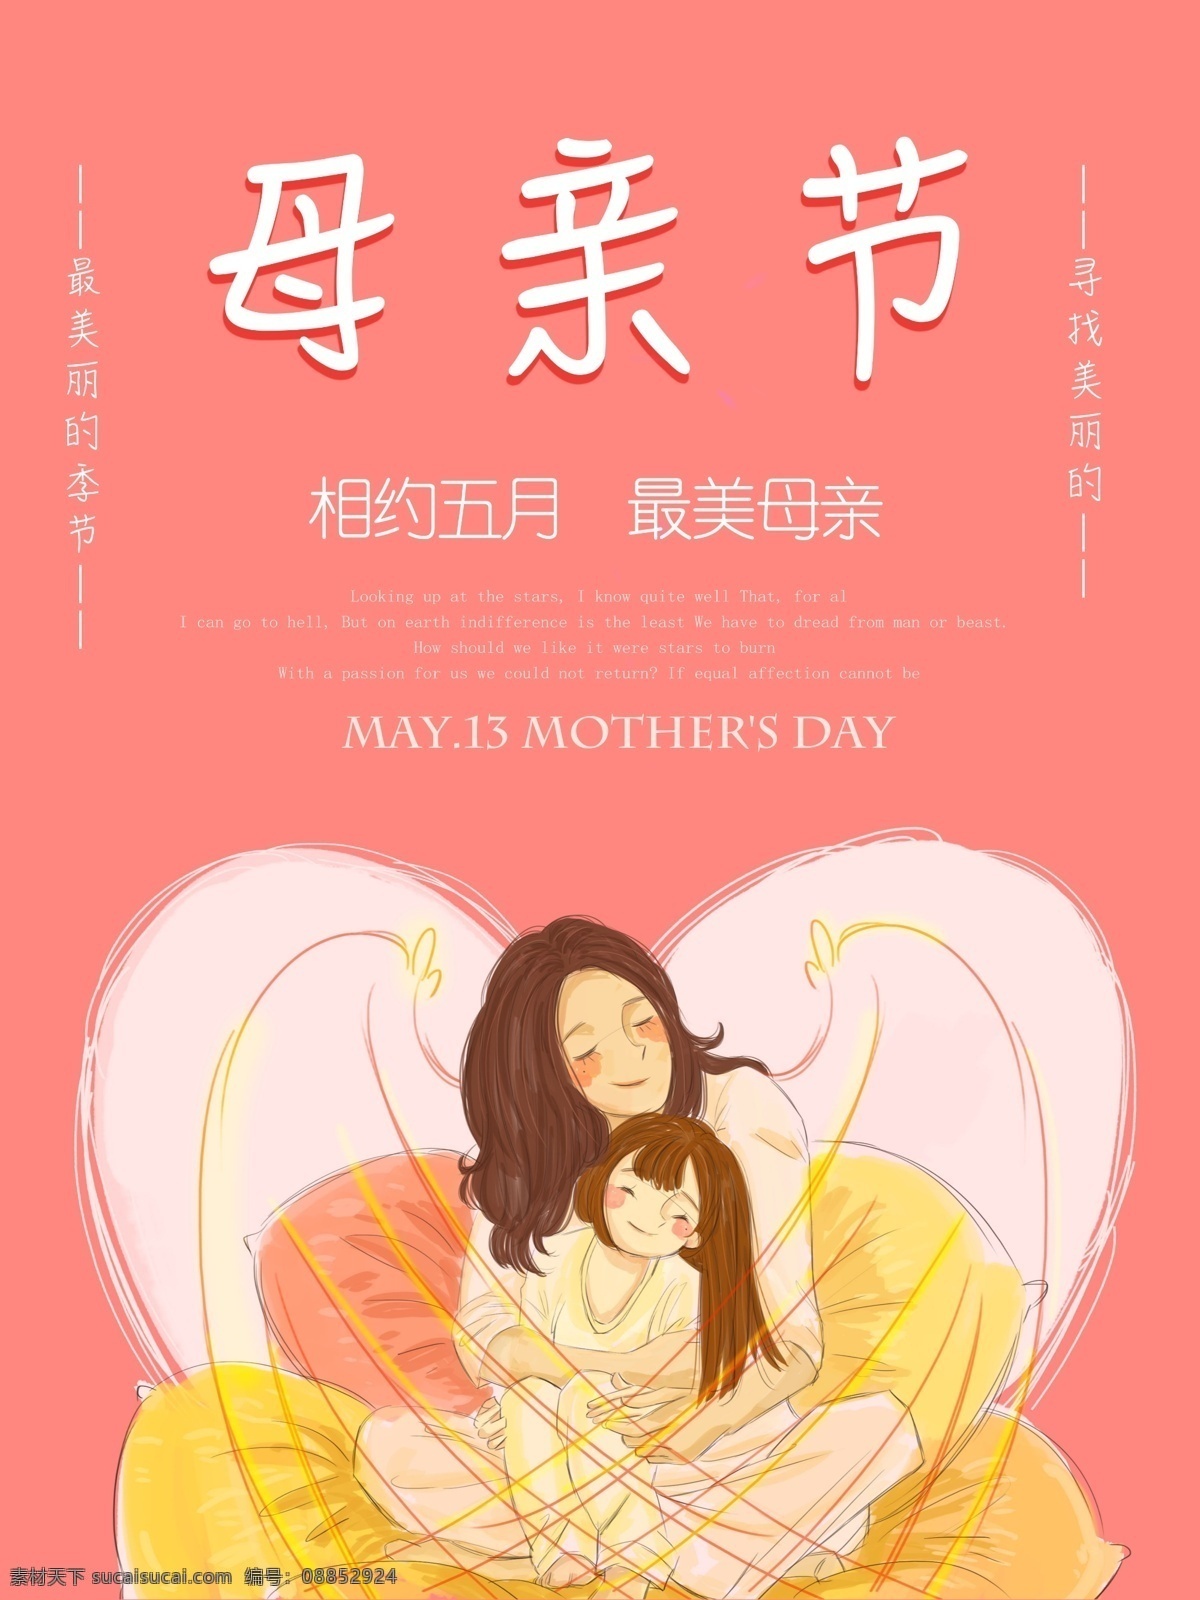 母亲节 快乐 海报 爱 护 盾 爱心 粉红色 背景 封面 粉红色背景 妈妈般的呵护 婴儿 爱的护盾